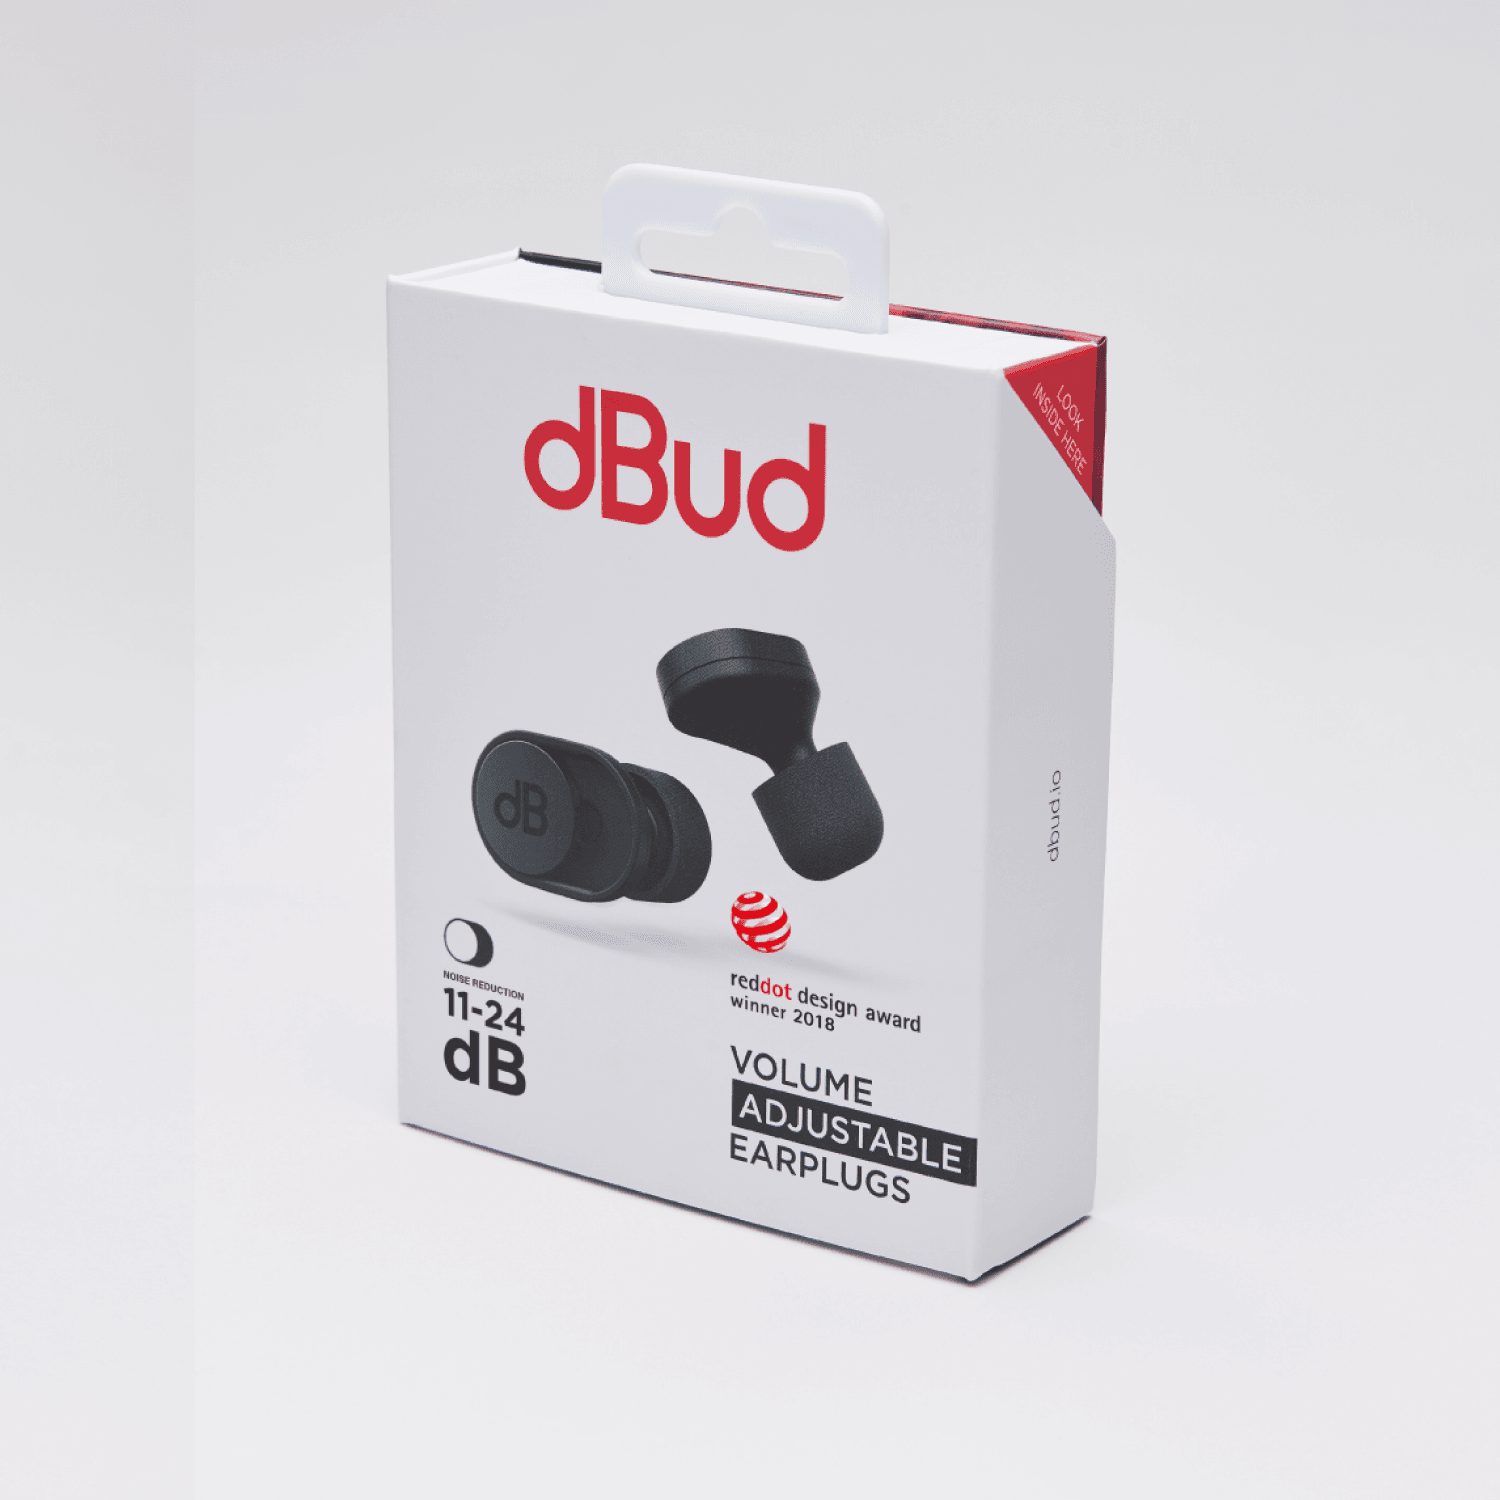 dBud 音量調整可能なイヤープラグ - dBud日本公式サイト｜ディーバッド ジャパン